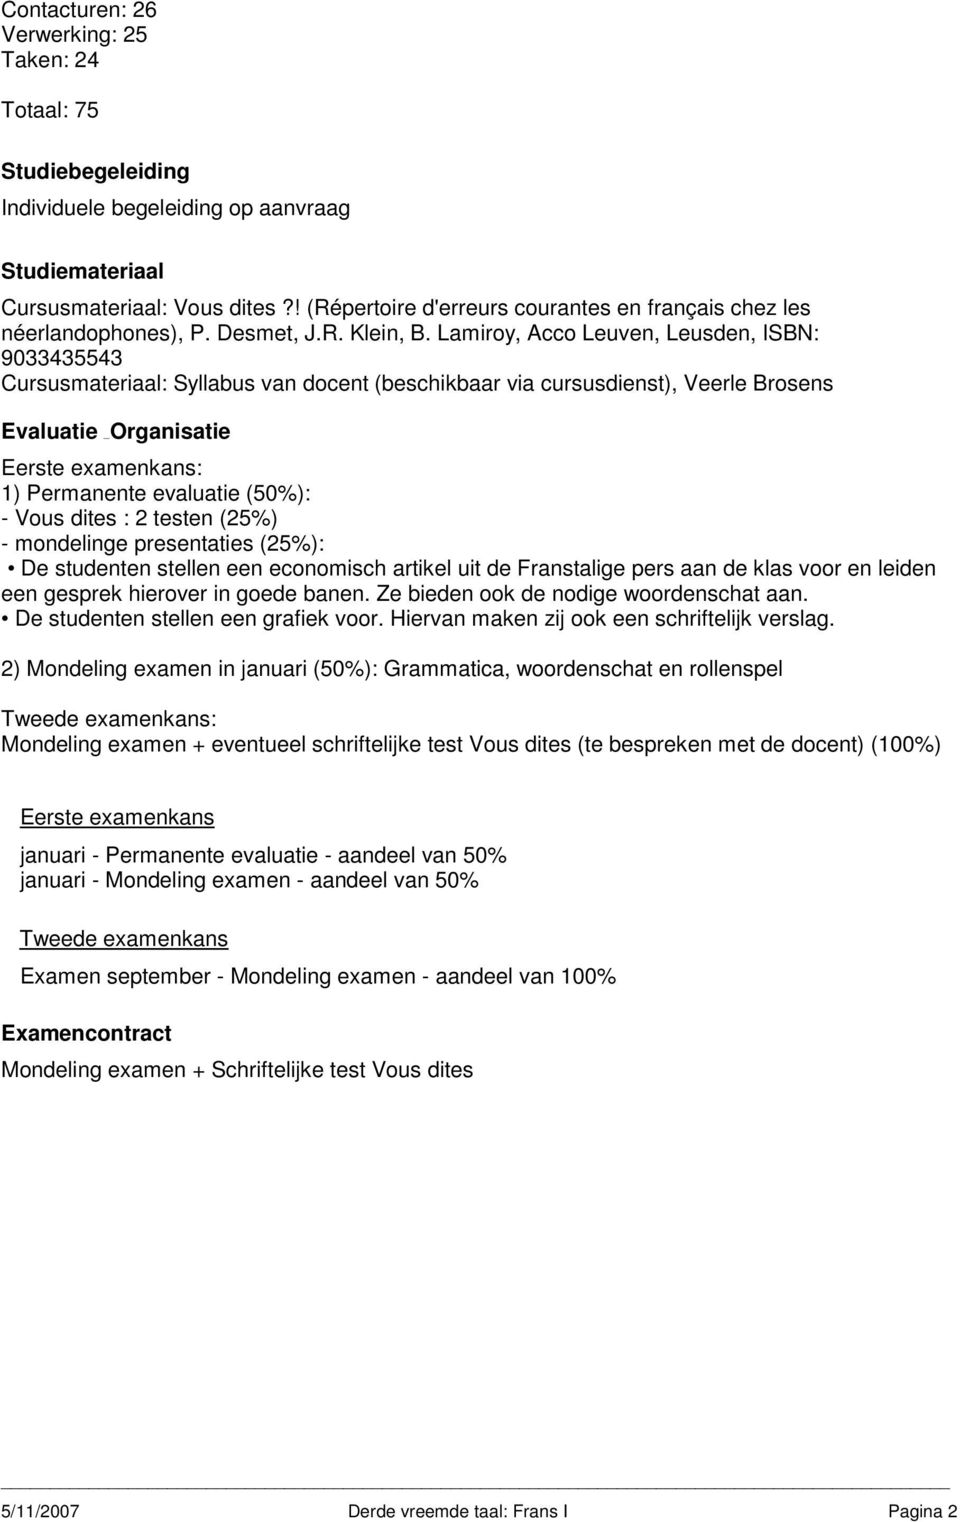 Lamiroy, Acco Leuven, Leusden, ISBN: 9033435543 Cursusmateriaal: Syllabus van docent (beschikbaar via cursusdienst), Veerle Brosens : 1) Permanente evaluatie (50%): - Vous dites : 2 testen (25%) -